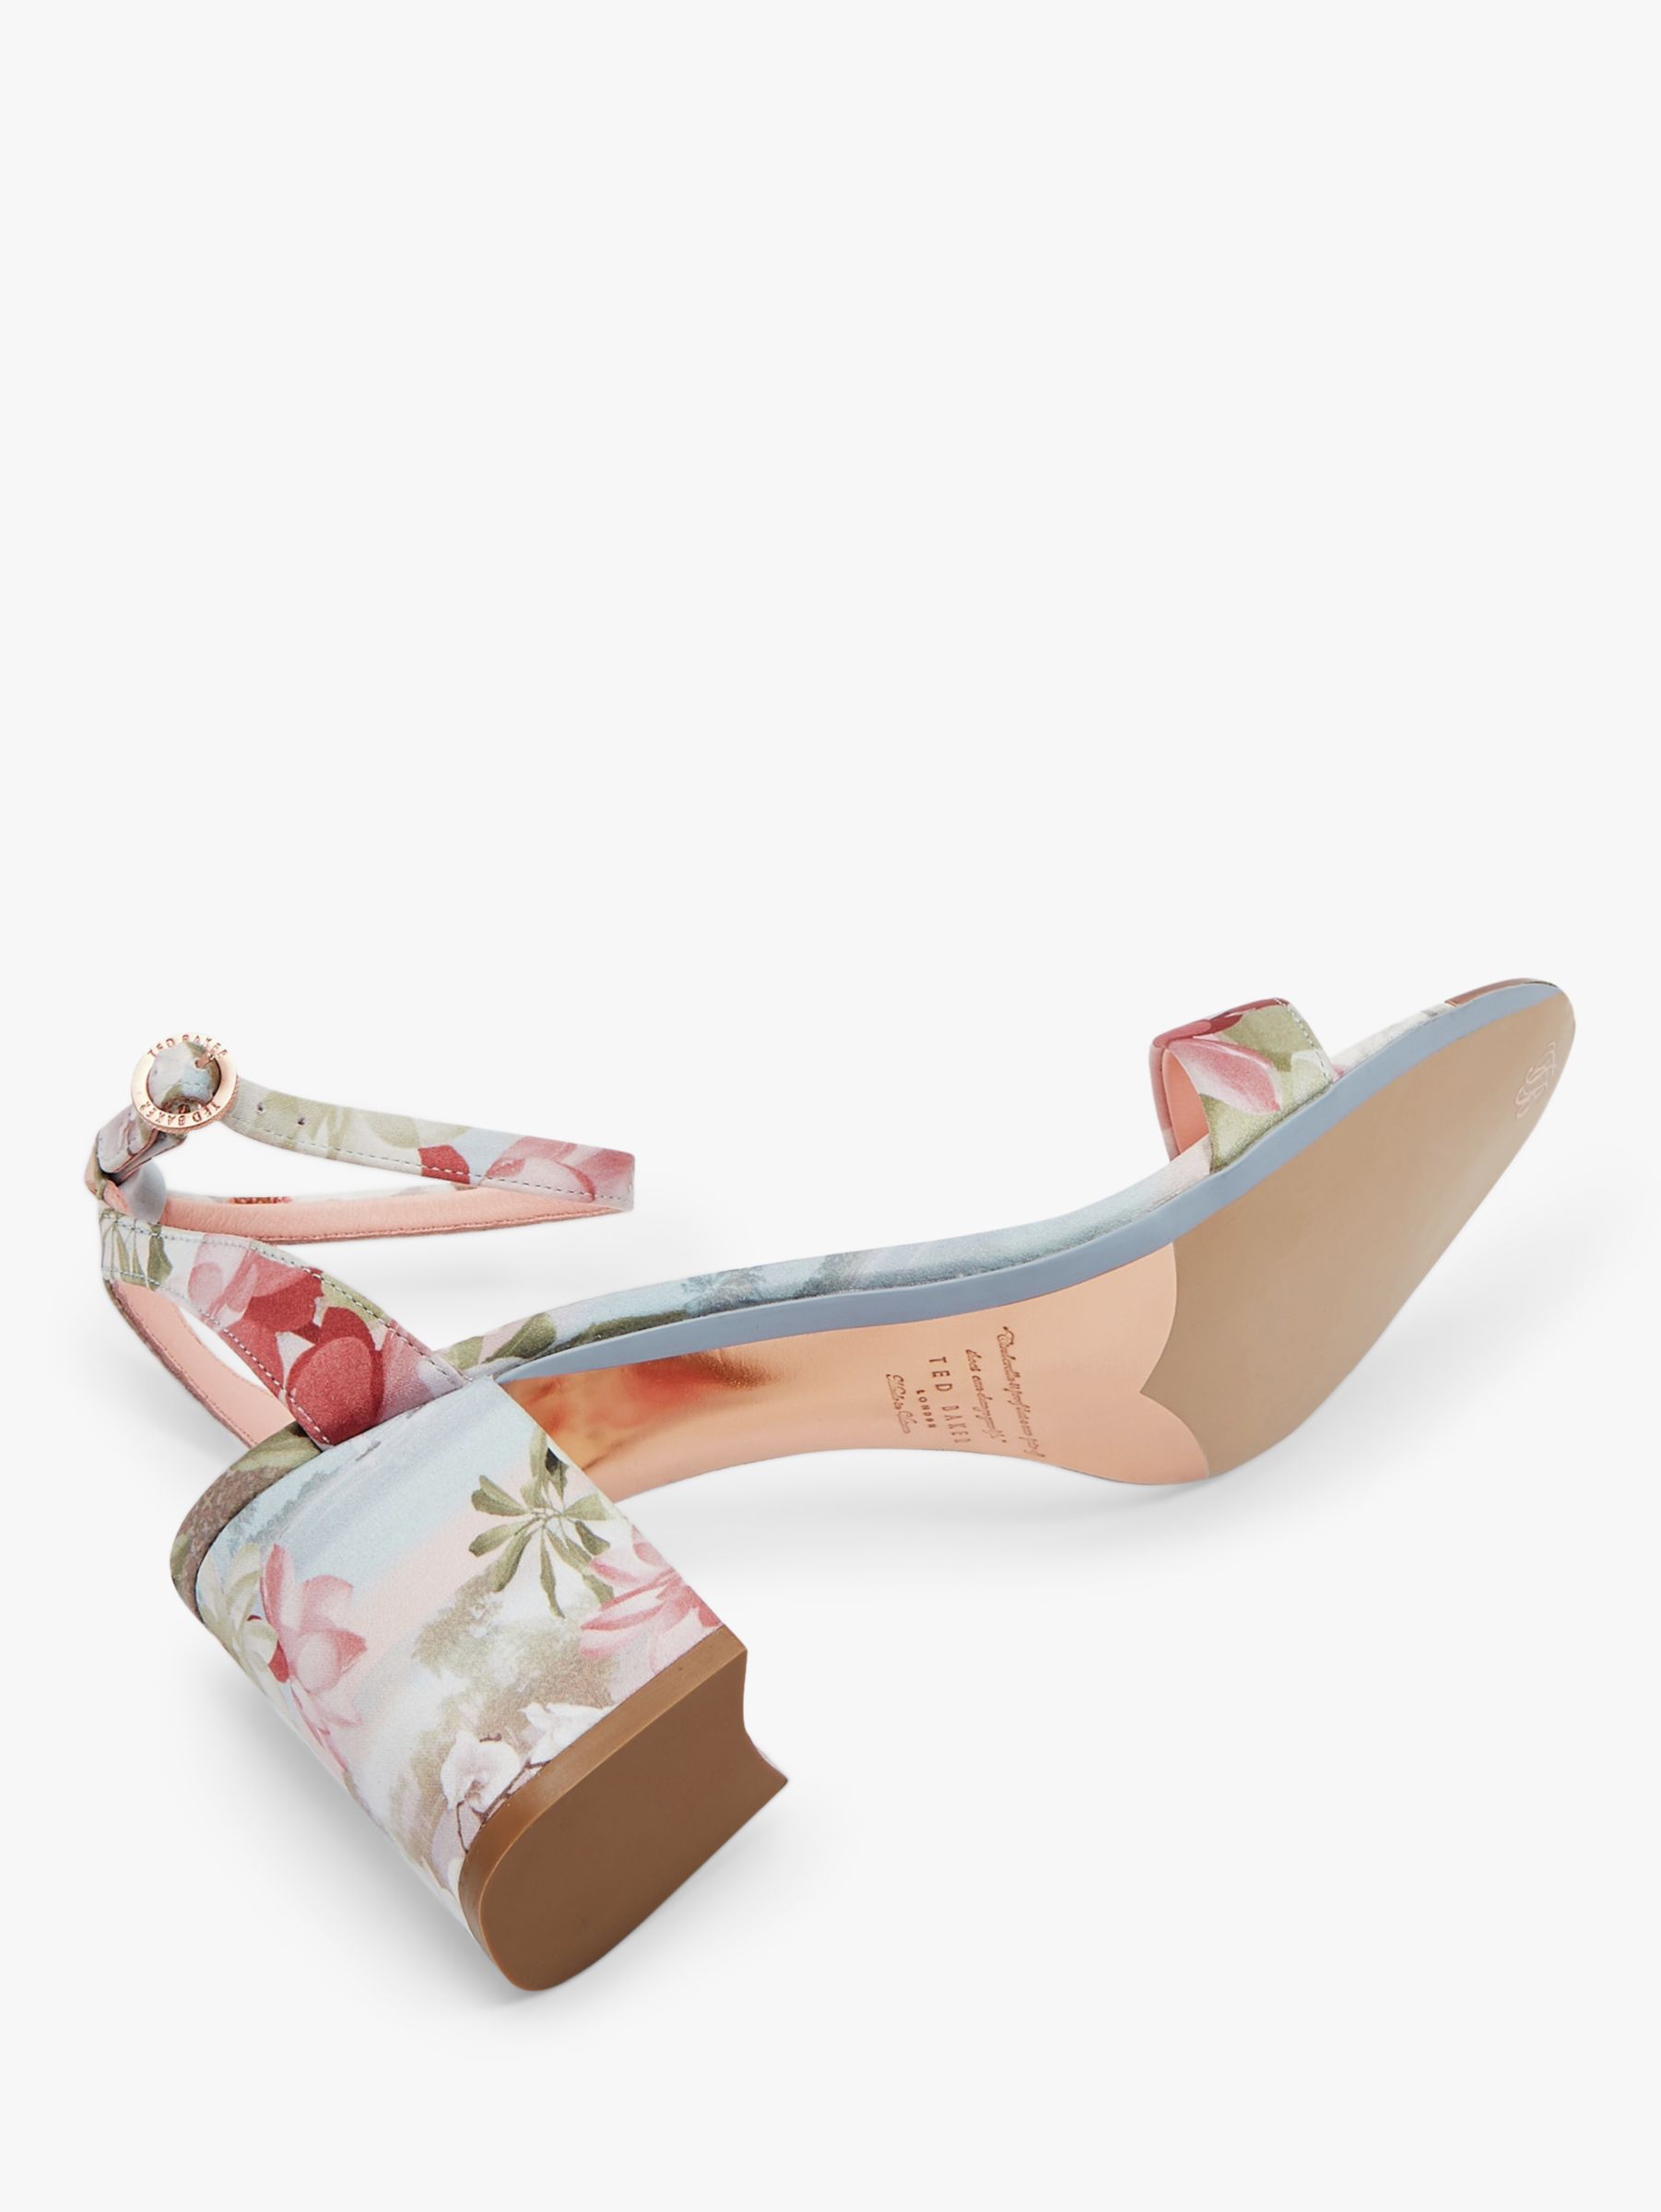 floral sandals uk